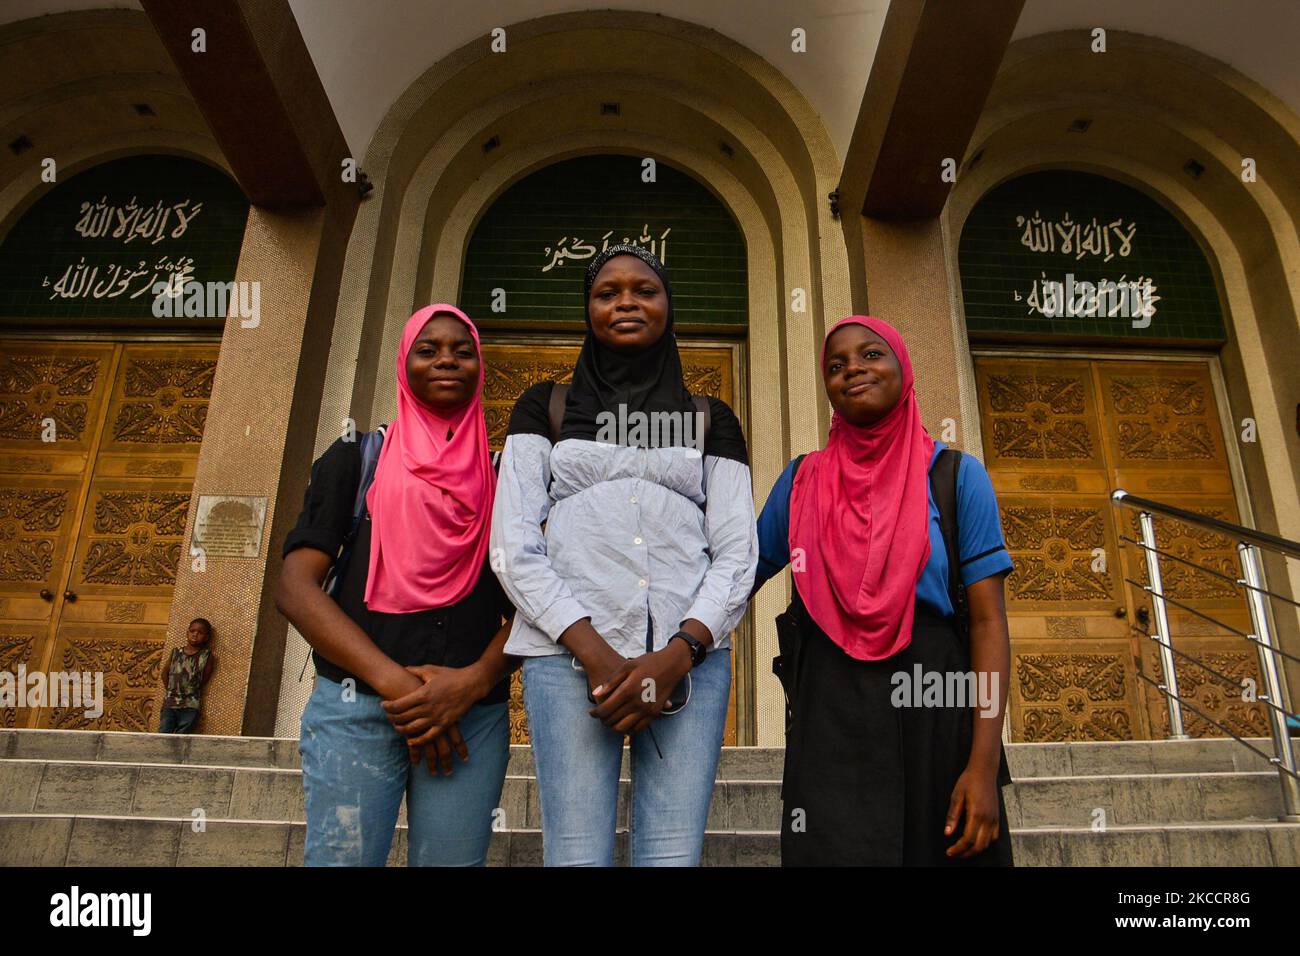 Muslimische Mädchen, die mit Hijabs bedeckt sind, posieren für ein Foto am Eingang der Zentralmoschee von Lagos (Insel Lagos), die sich an der geschäftigen Nnamdi Azikiwe Street in Lagos, Nigeria, befindet, 14. April 2021. Muslime markierten den Beginn des Ramadan am Dienstag, der Ramadan ist geprägt von langen Gebeten, bis in die Abenddämmerung dauernden Fasten und nächtlichen Festen mit Familie und Freunden, obwohl überfüllte Schulter-an-Schulter-Treffen in der Moschee und große Treffen zu Mahlzeiten aufgrund der anhaltenden Verbreitung von COVID-19 weiterhin verboten sind. (Foto von Olukayode Jaiyeola/NurPhoto) Stockfoto